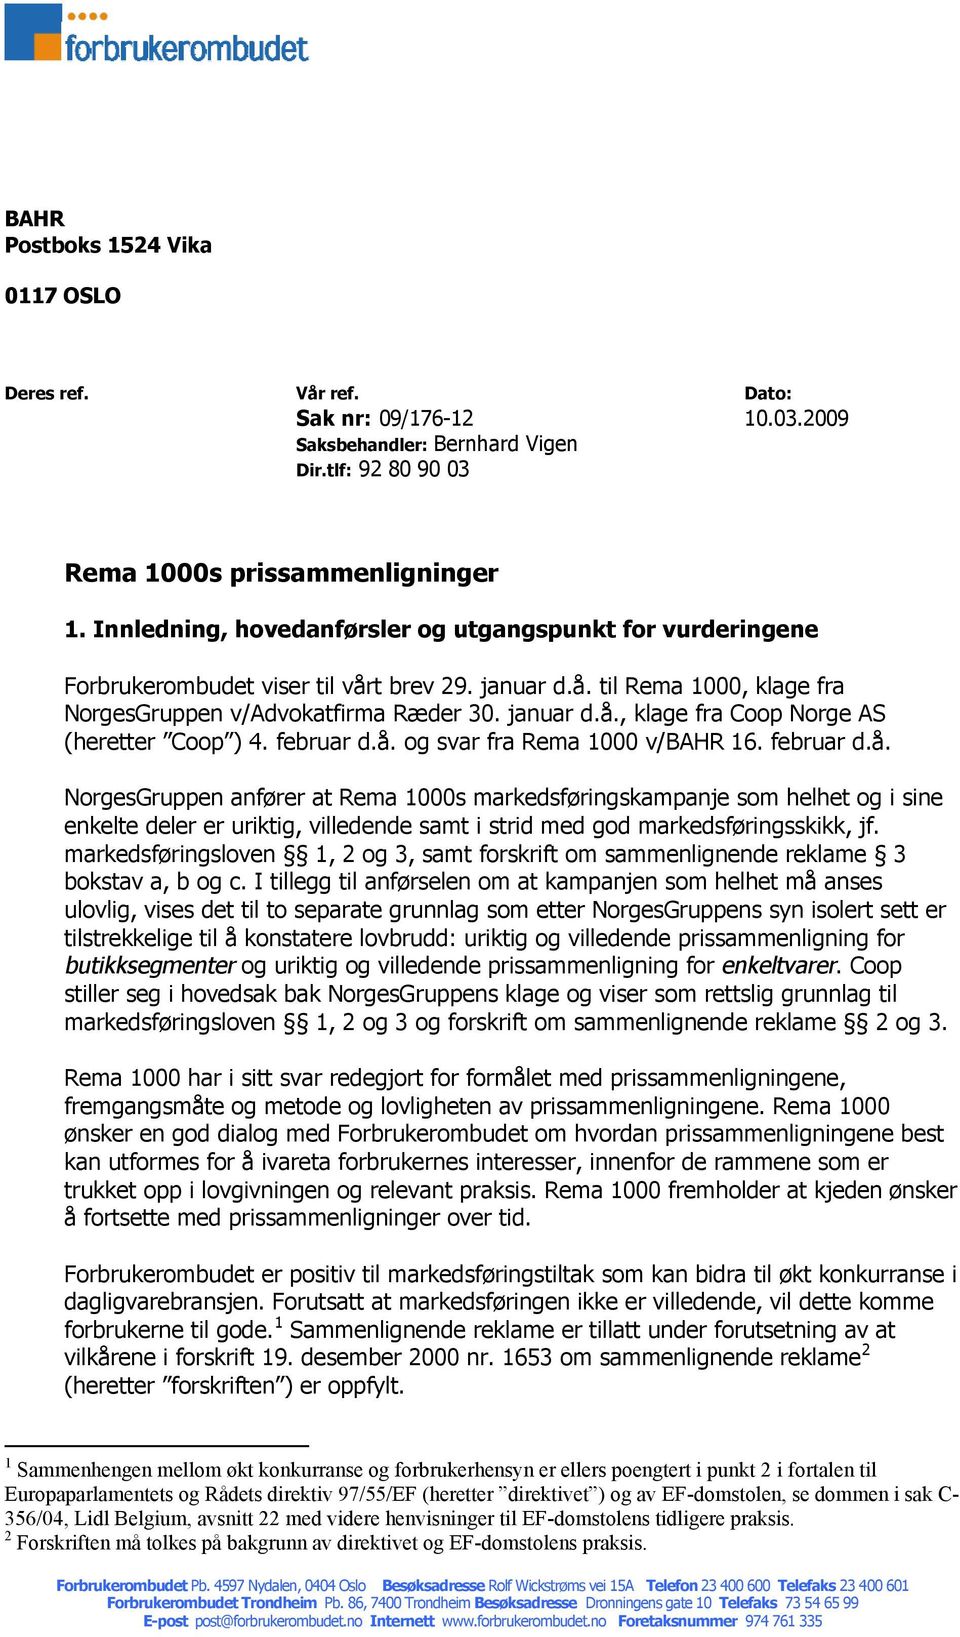 februar d.å. og svar fra Rema 1000 v/bahr 16. februar d.å. NorgesGruppen anfører at Rema 1000s markedsføringskampanje som helhet og i sine enkelte deler er uriktig, villedende samt i strid med god markedsføringsskikk, jf.